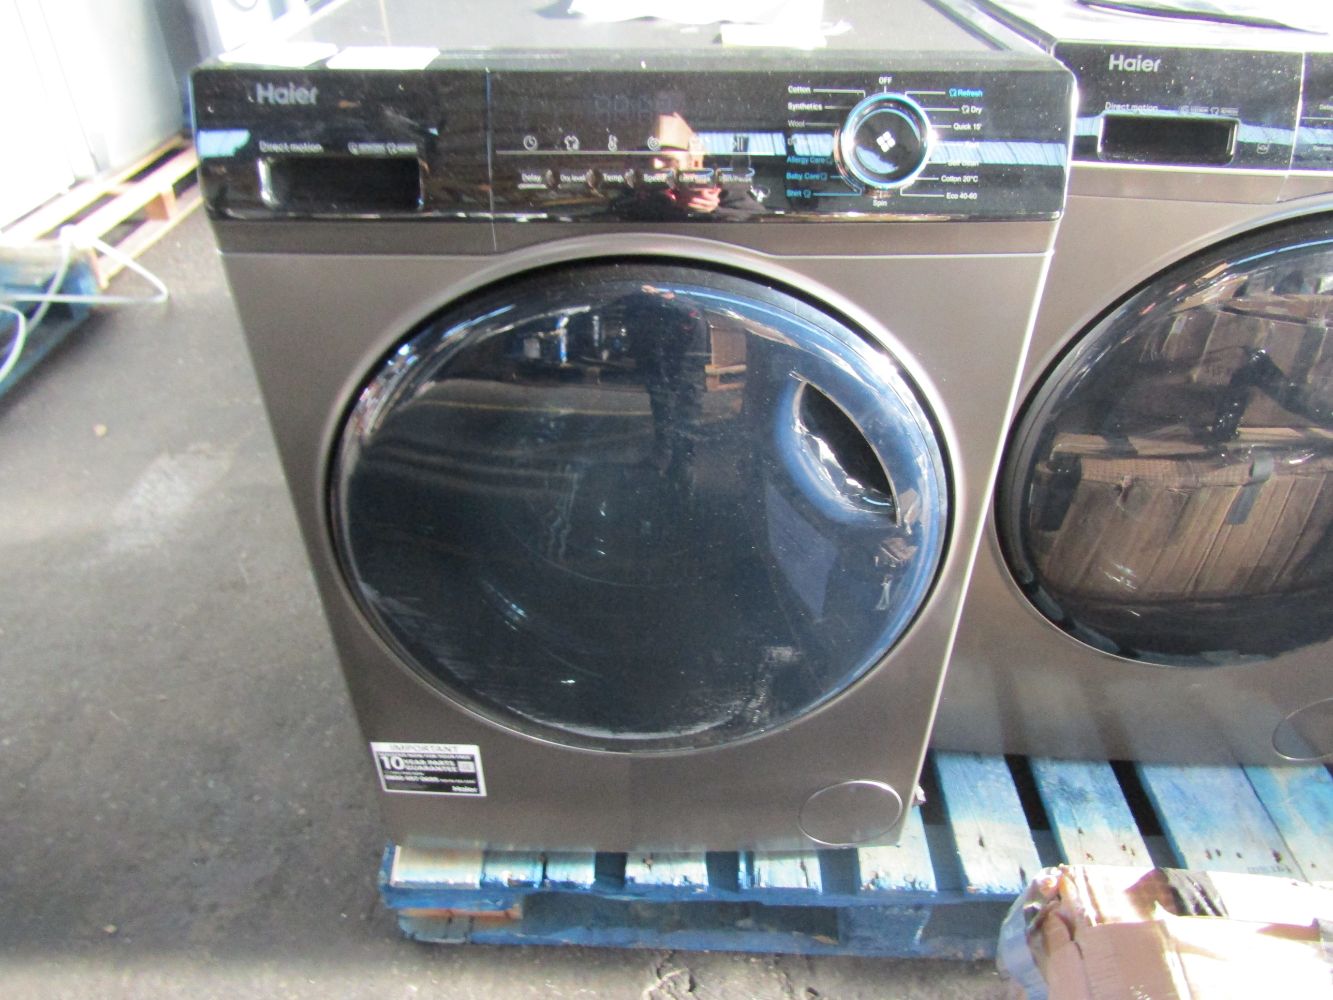 Fridges, Washing machines, freezers and dishwashers from Costco